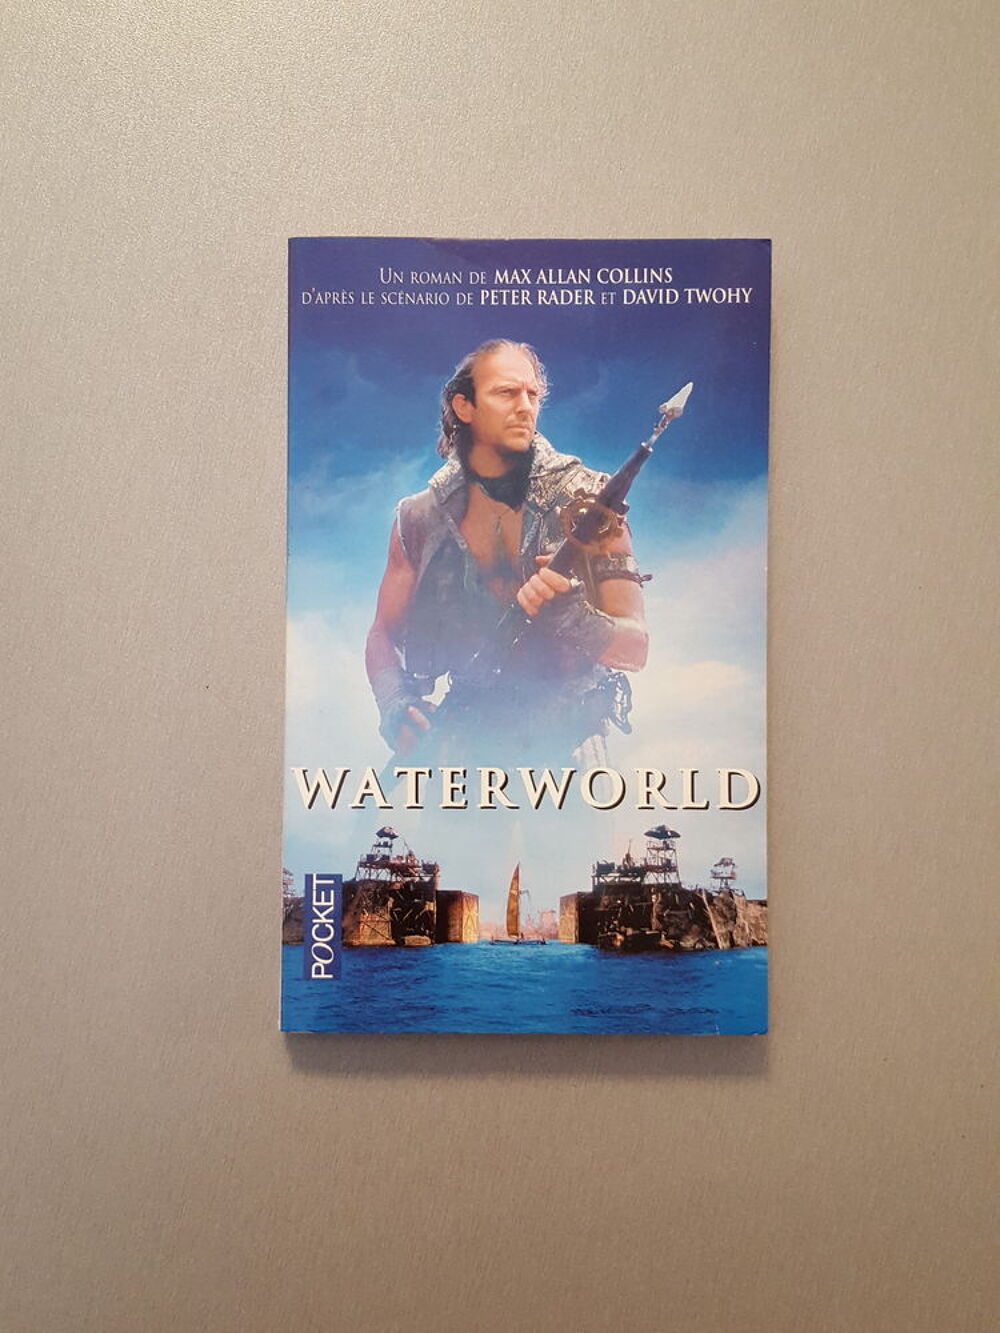 Le livre Waterworld de Max Allan Collins
Livres et BD